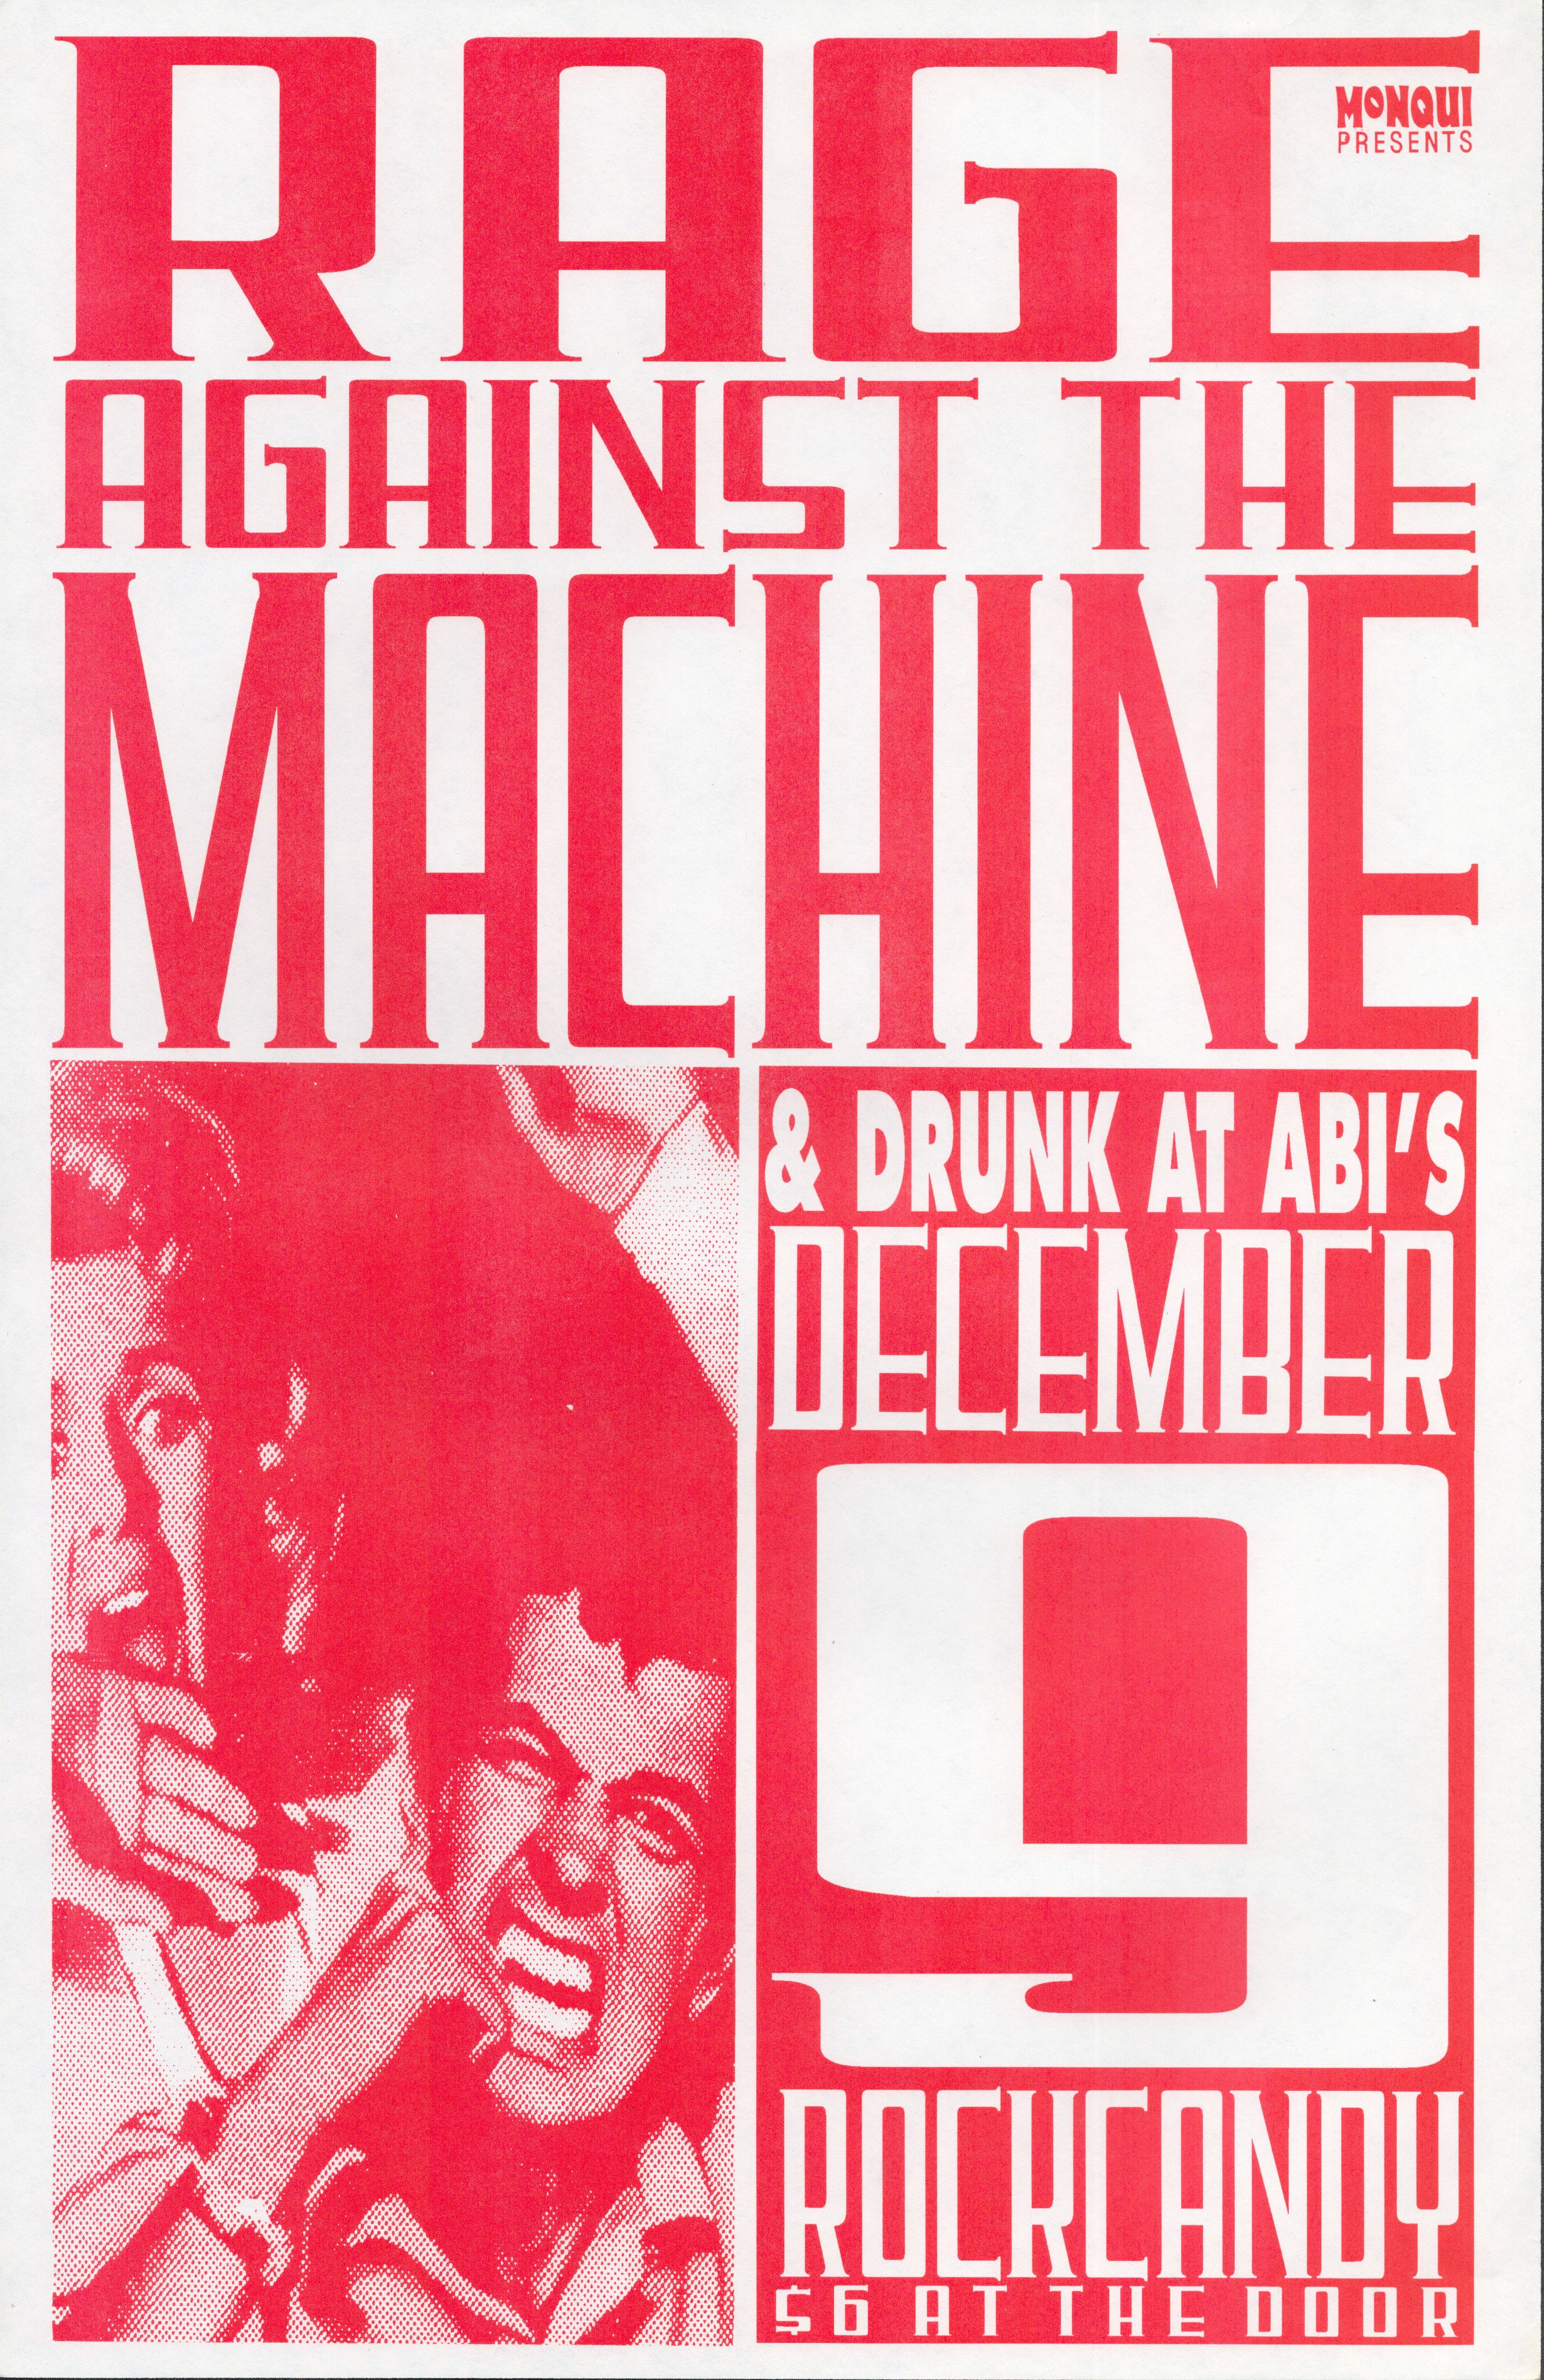 MXP-216.12 Rage Against The Machine 1992 Rockcandy  Dec 9 Concert Poster